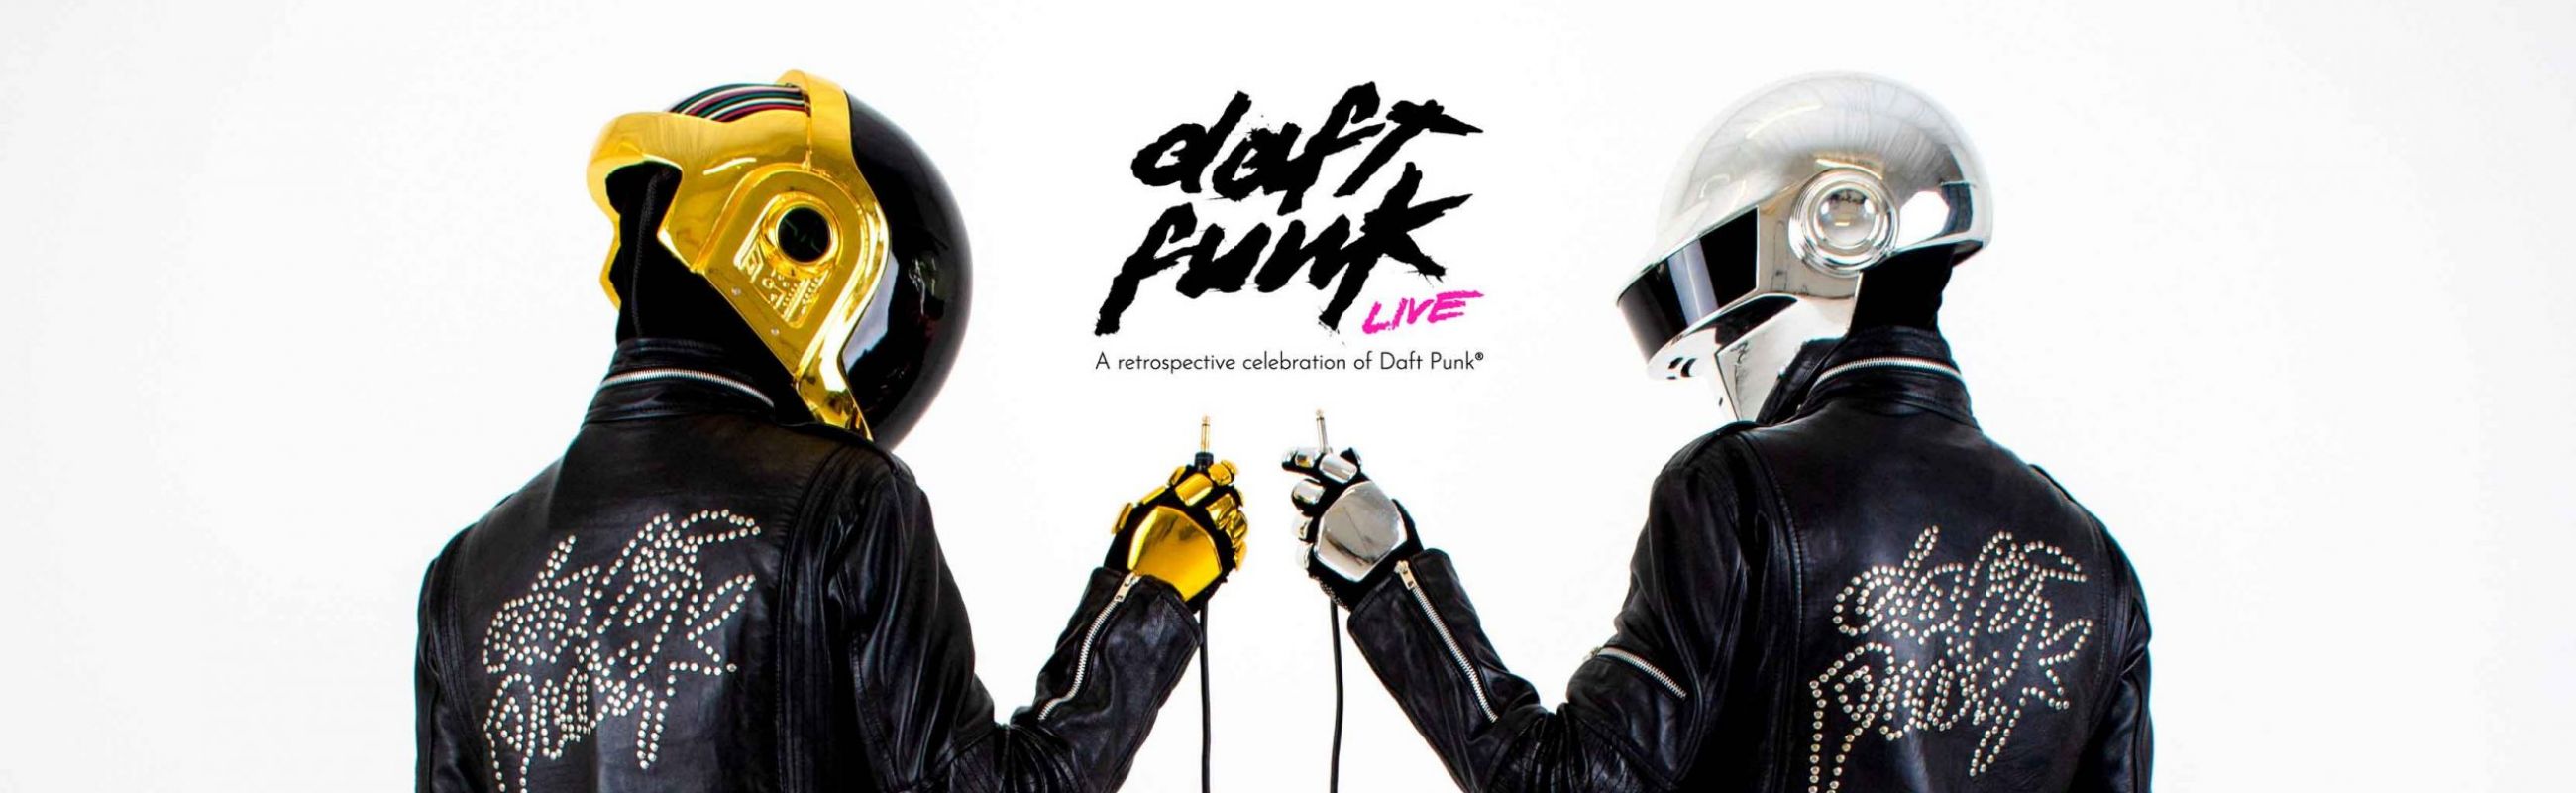 Daft Funk Live Banner